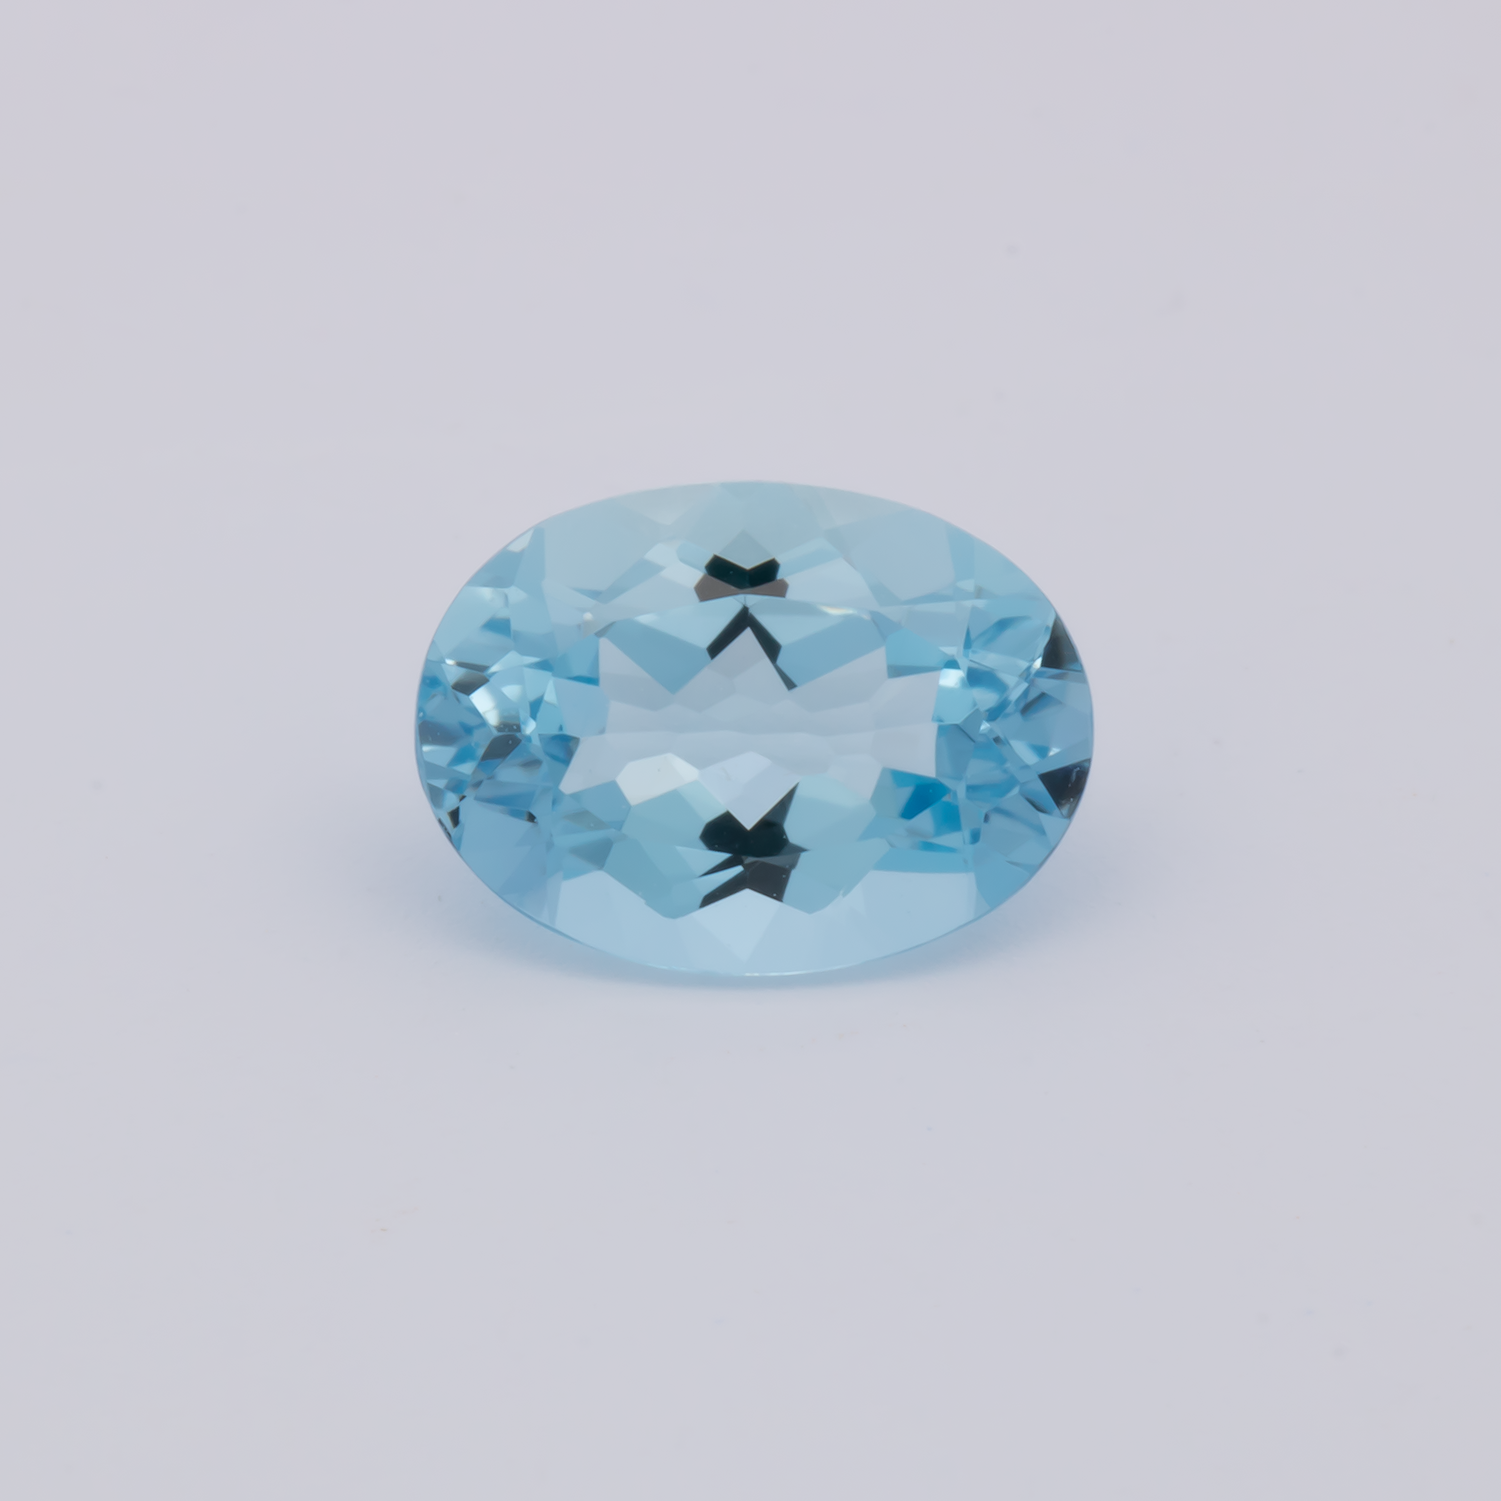 Aquamarin AAA - blau, oval, 9x6.6 mm, 1.45 cts, Nr. A99084